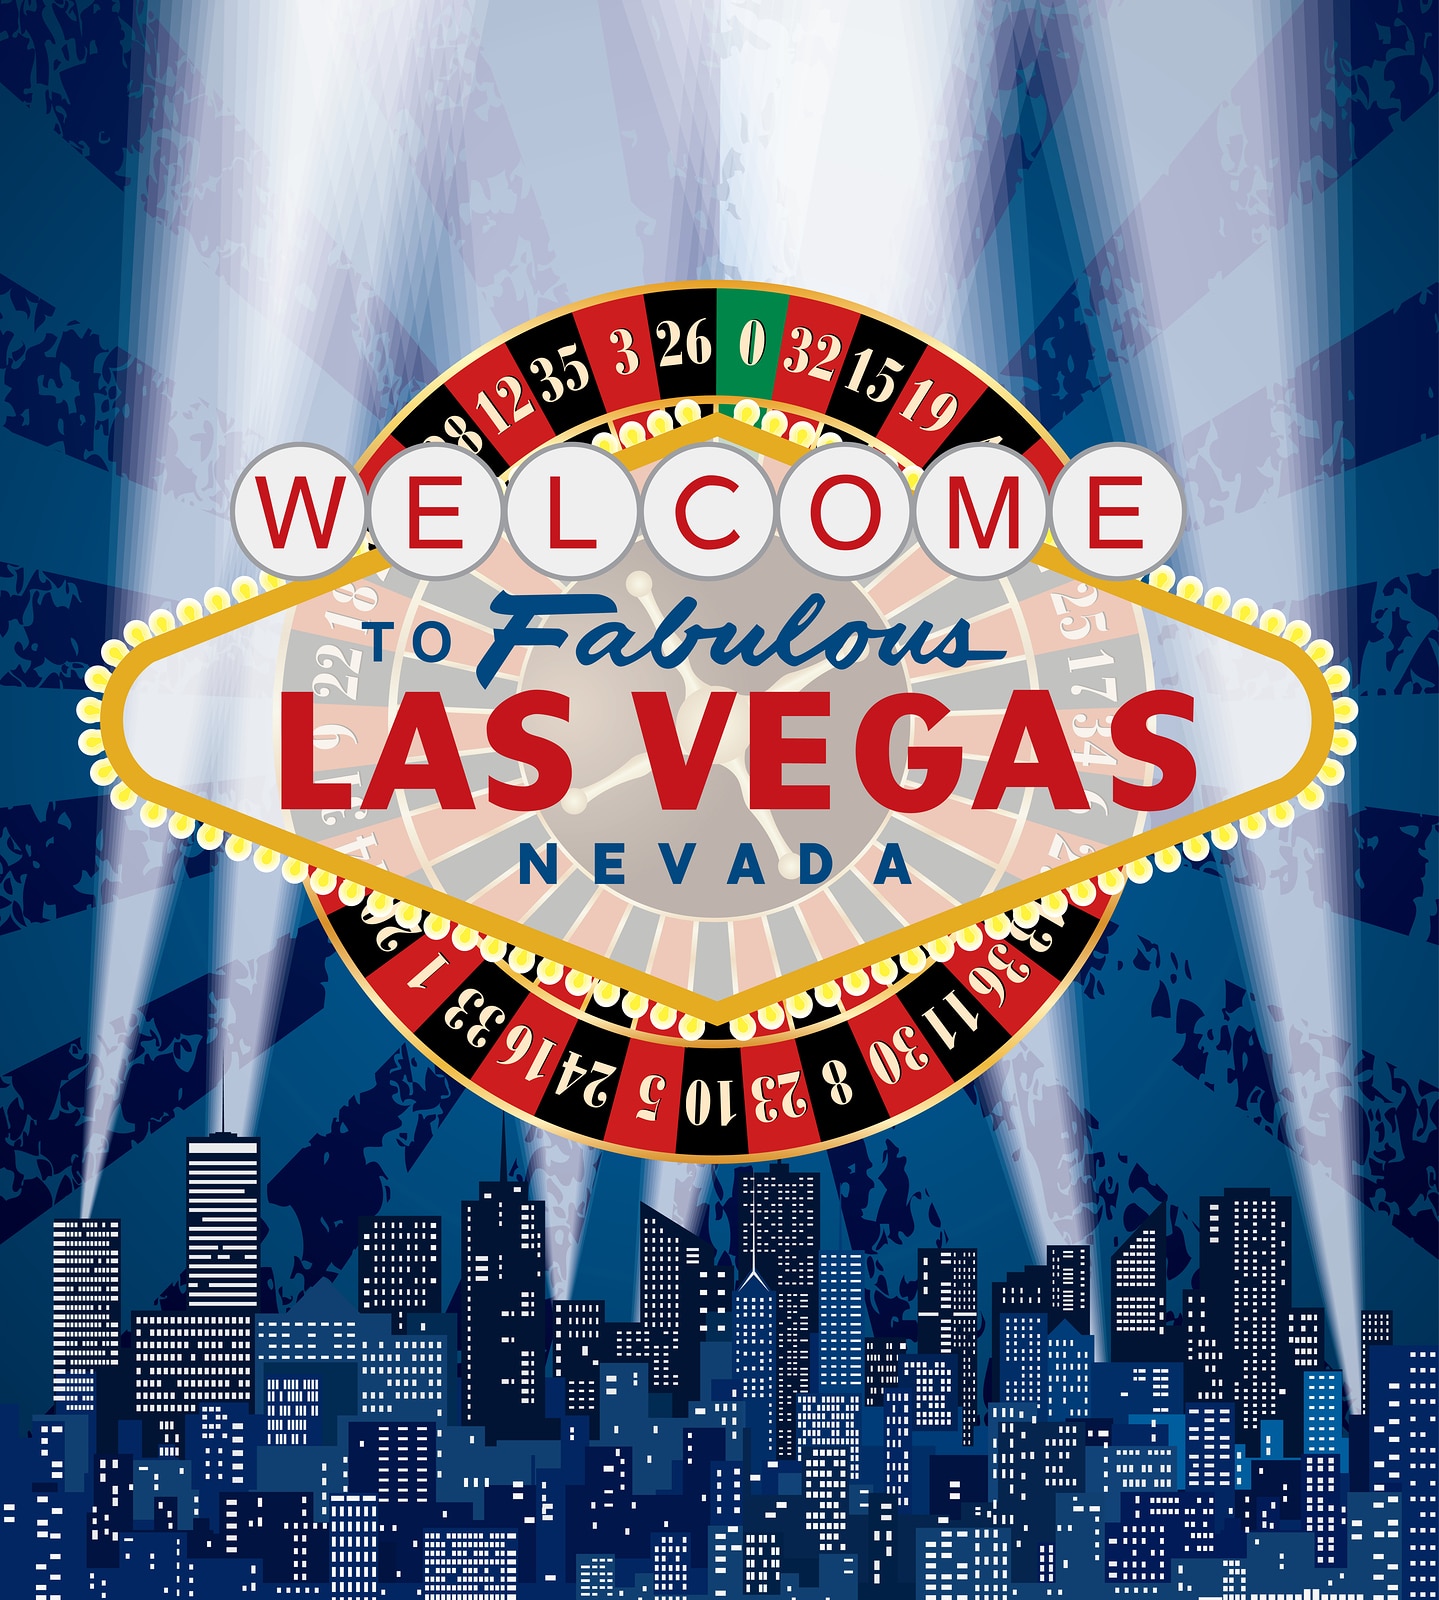 Los mejores shows familiares de Las Vegas compartidas ppor Sapphire Resorts Group